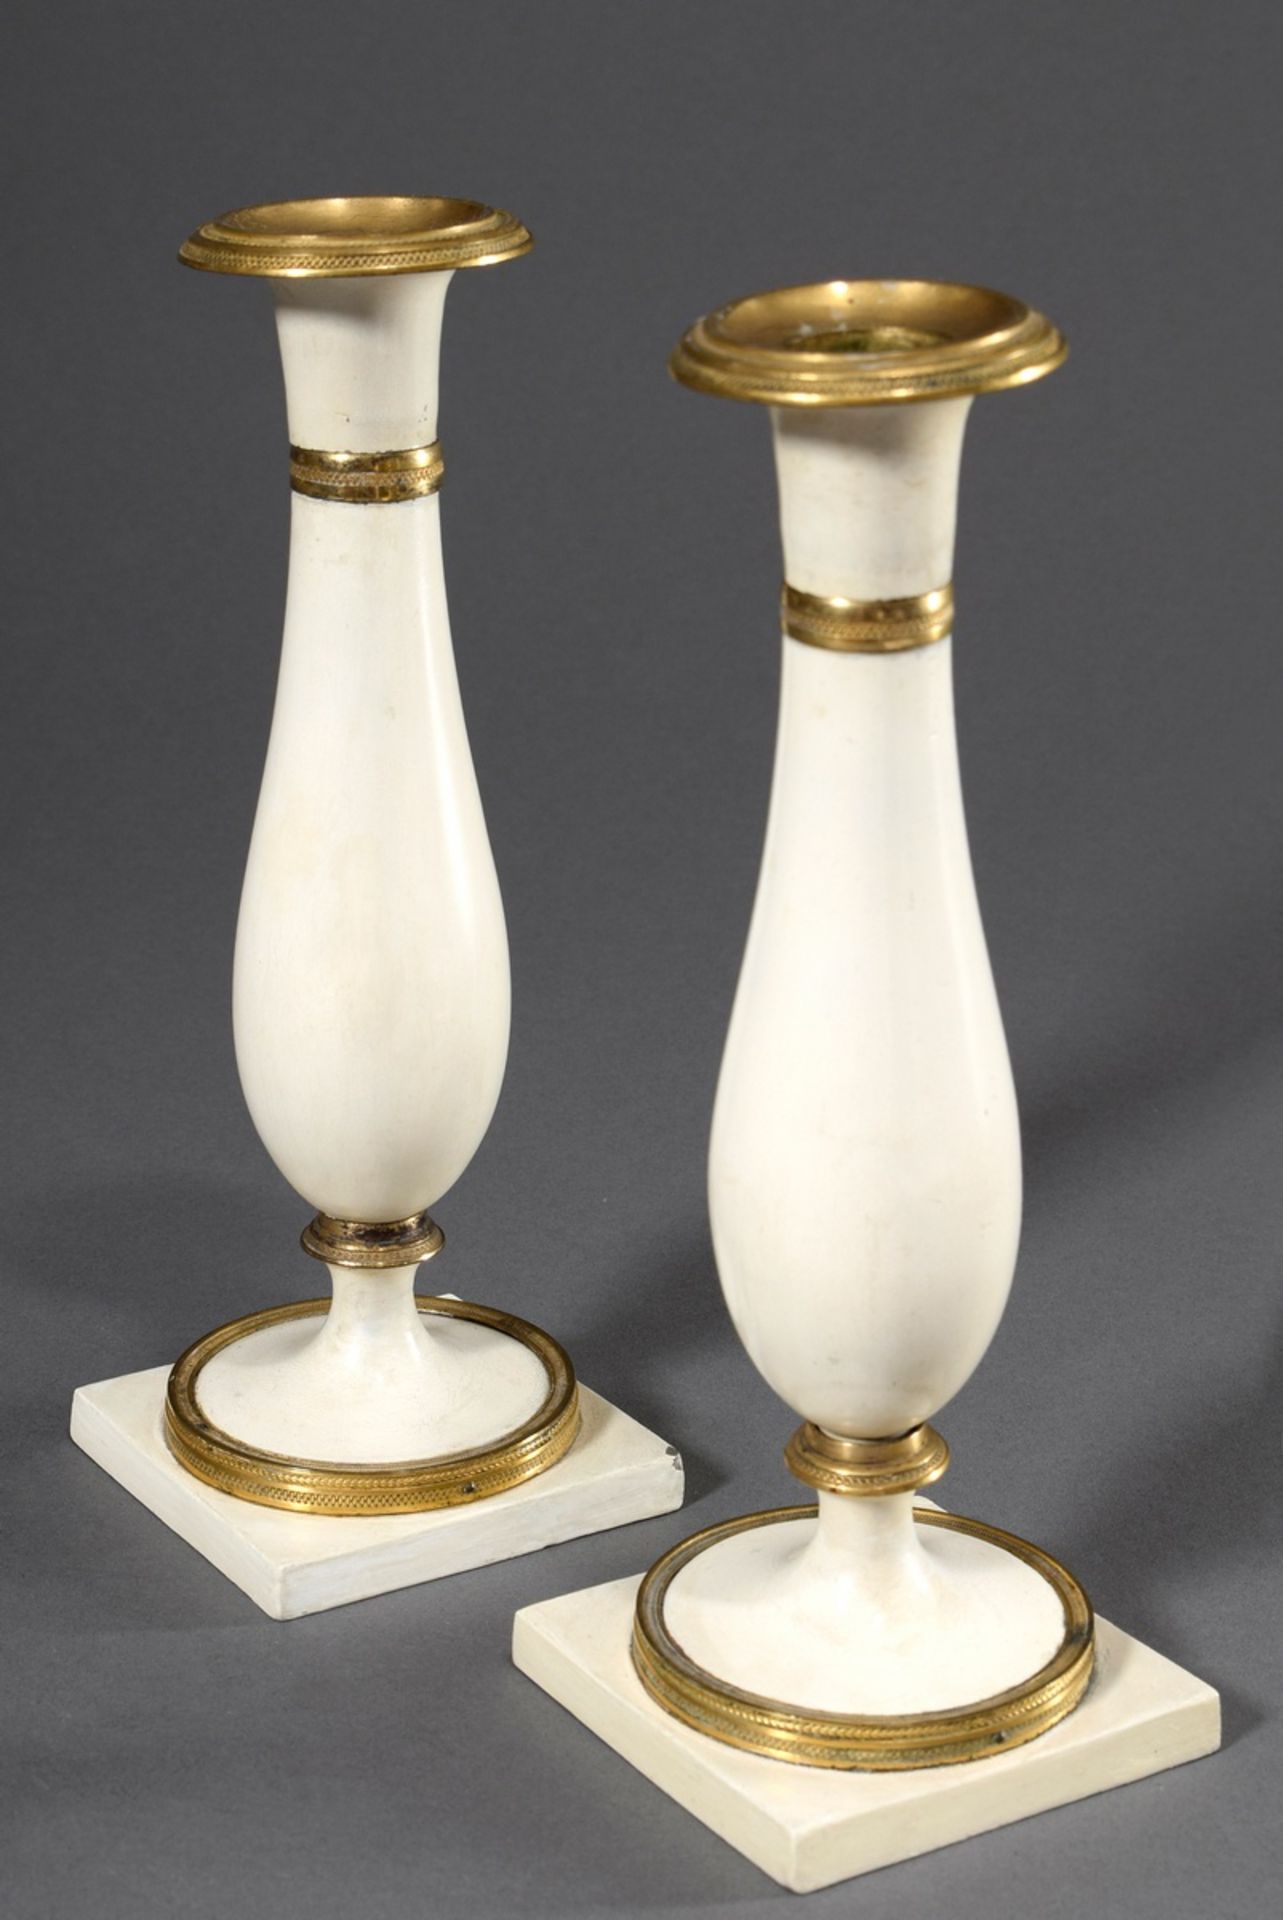 Paar Stobwasser Zinn Leuchter auf quadratischem Fuß und vasenförmigem Schaft, monochrom weiß lackie